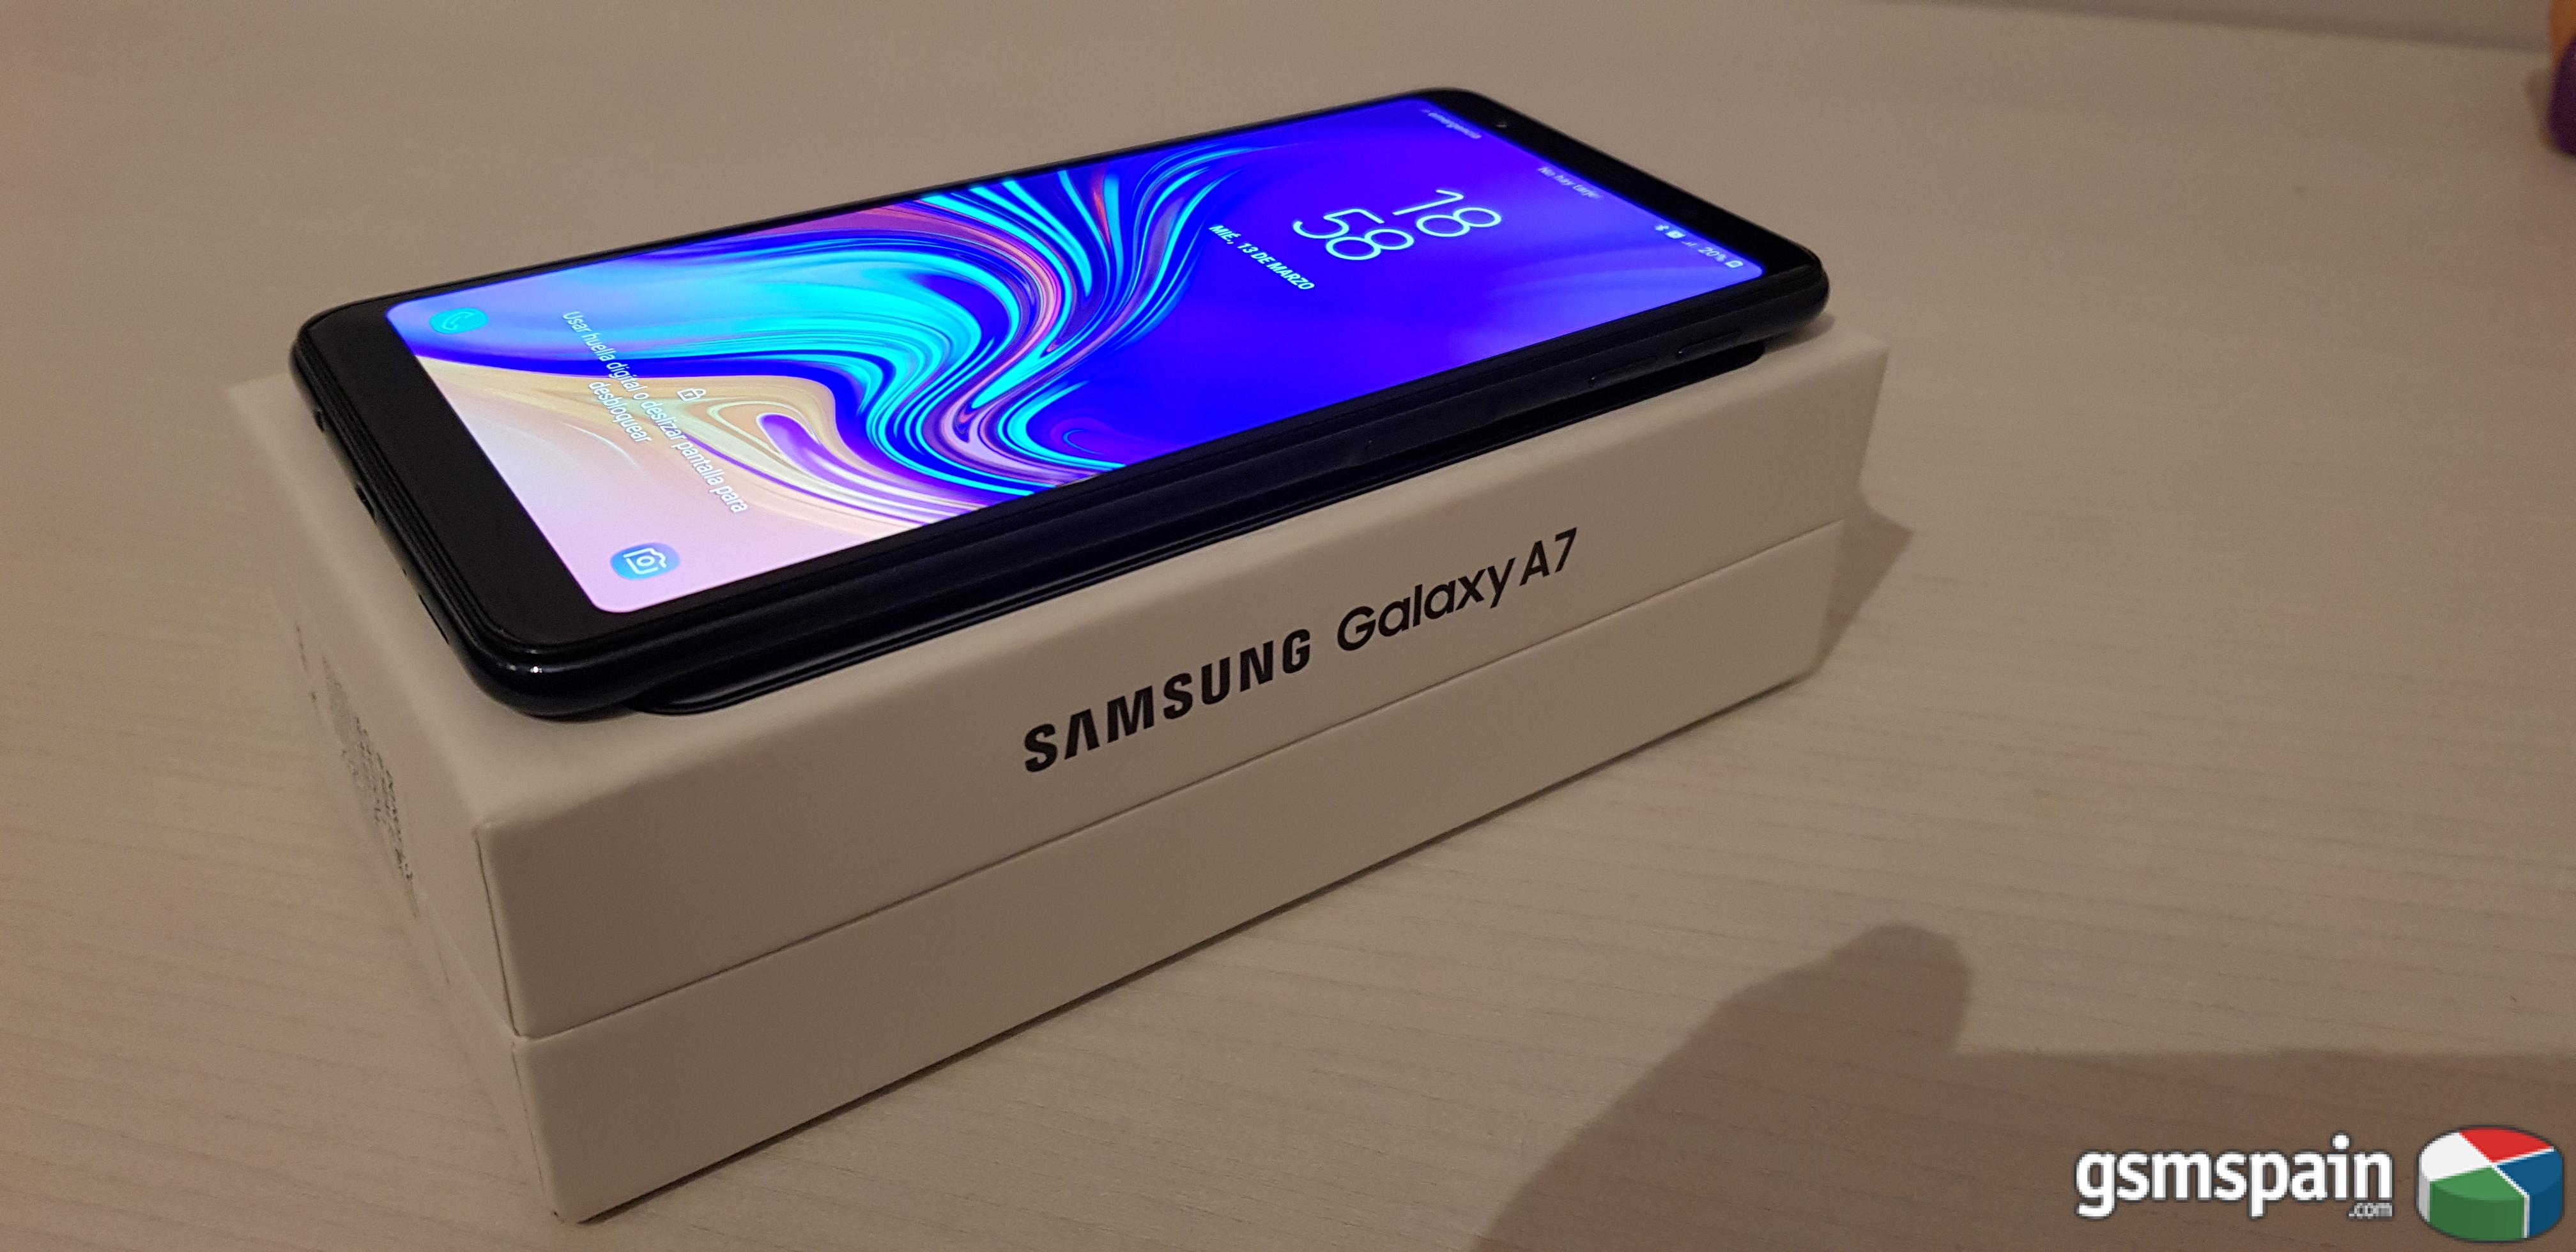 [VENDO] Samsung Galaxy A7